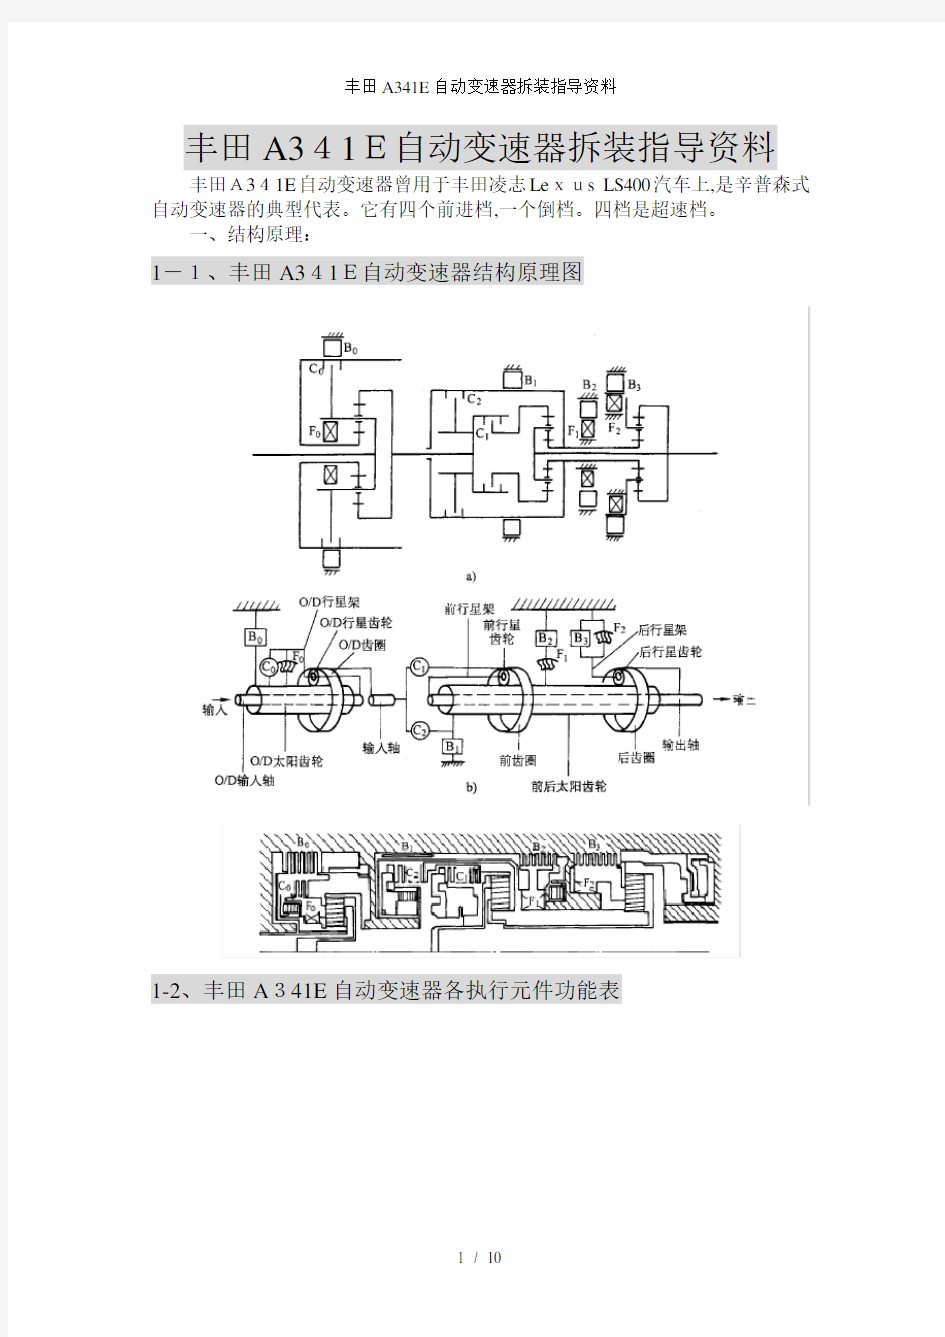 丰田A341E自动变速器拆装指导资料